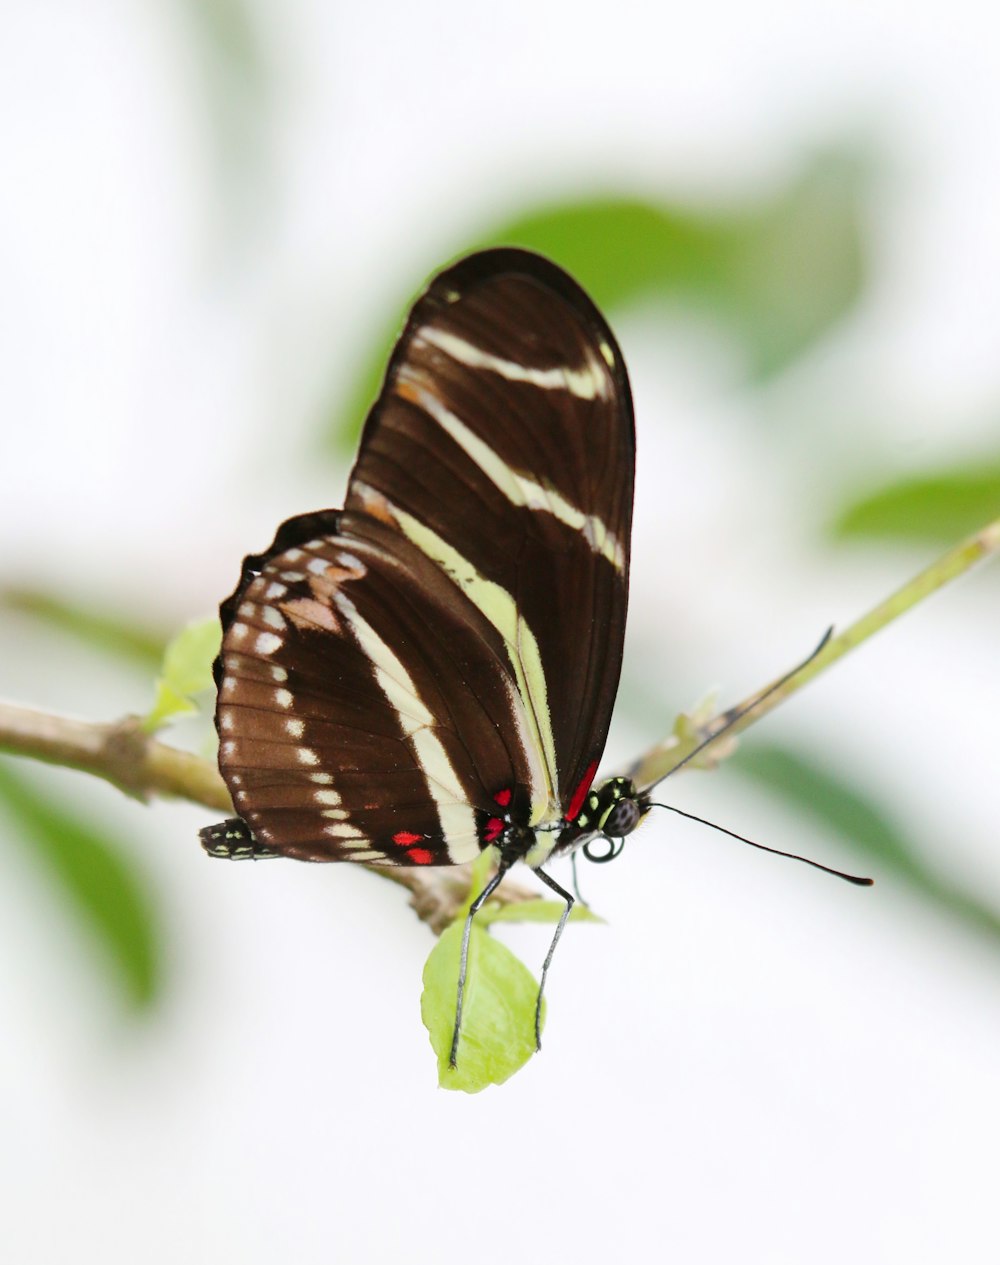 una mariposa marrón y blanca sentada en una rama